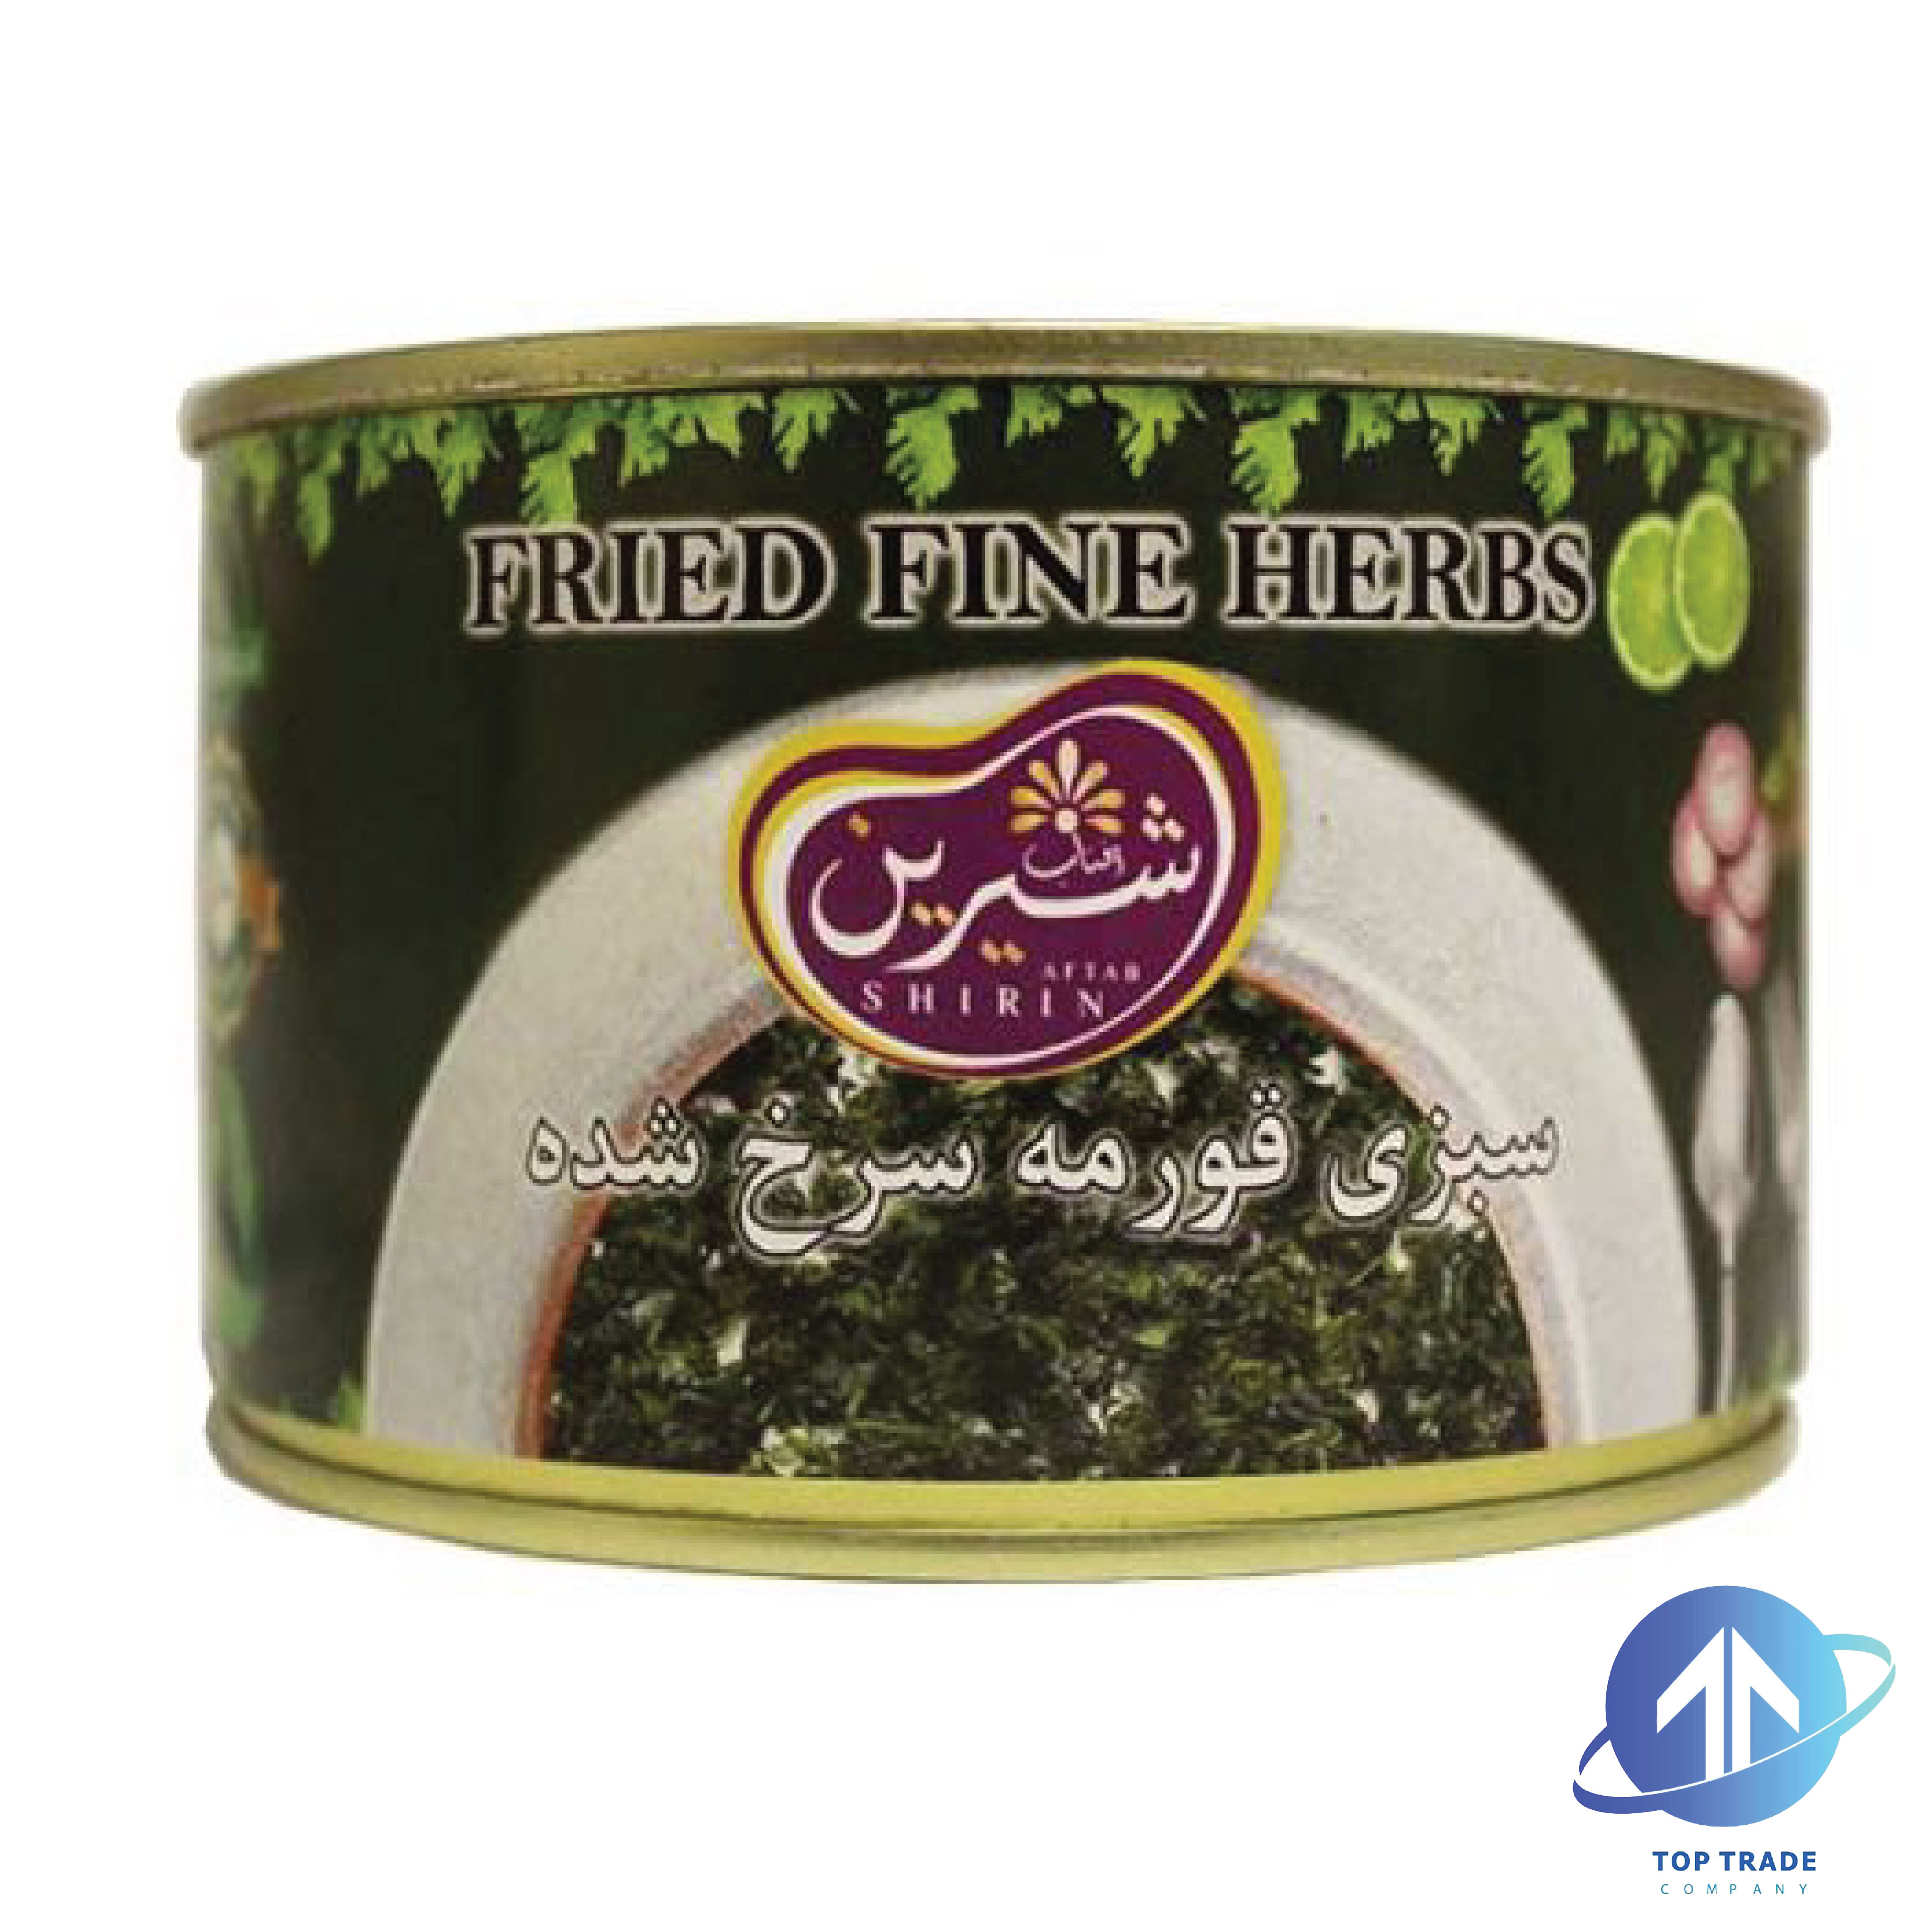 Aftab Shirin Fried Fine Herbs 450gr